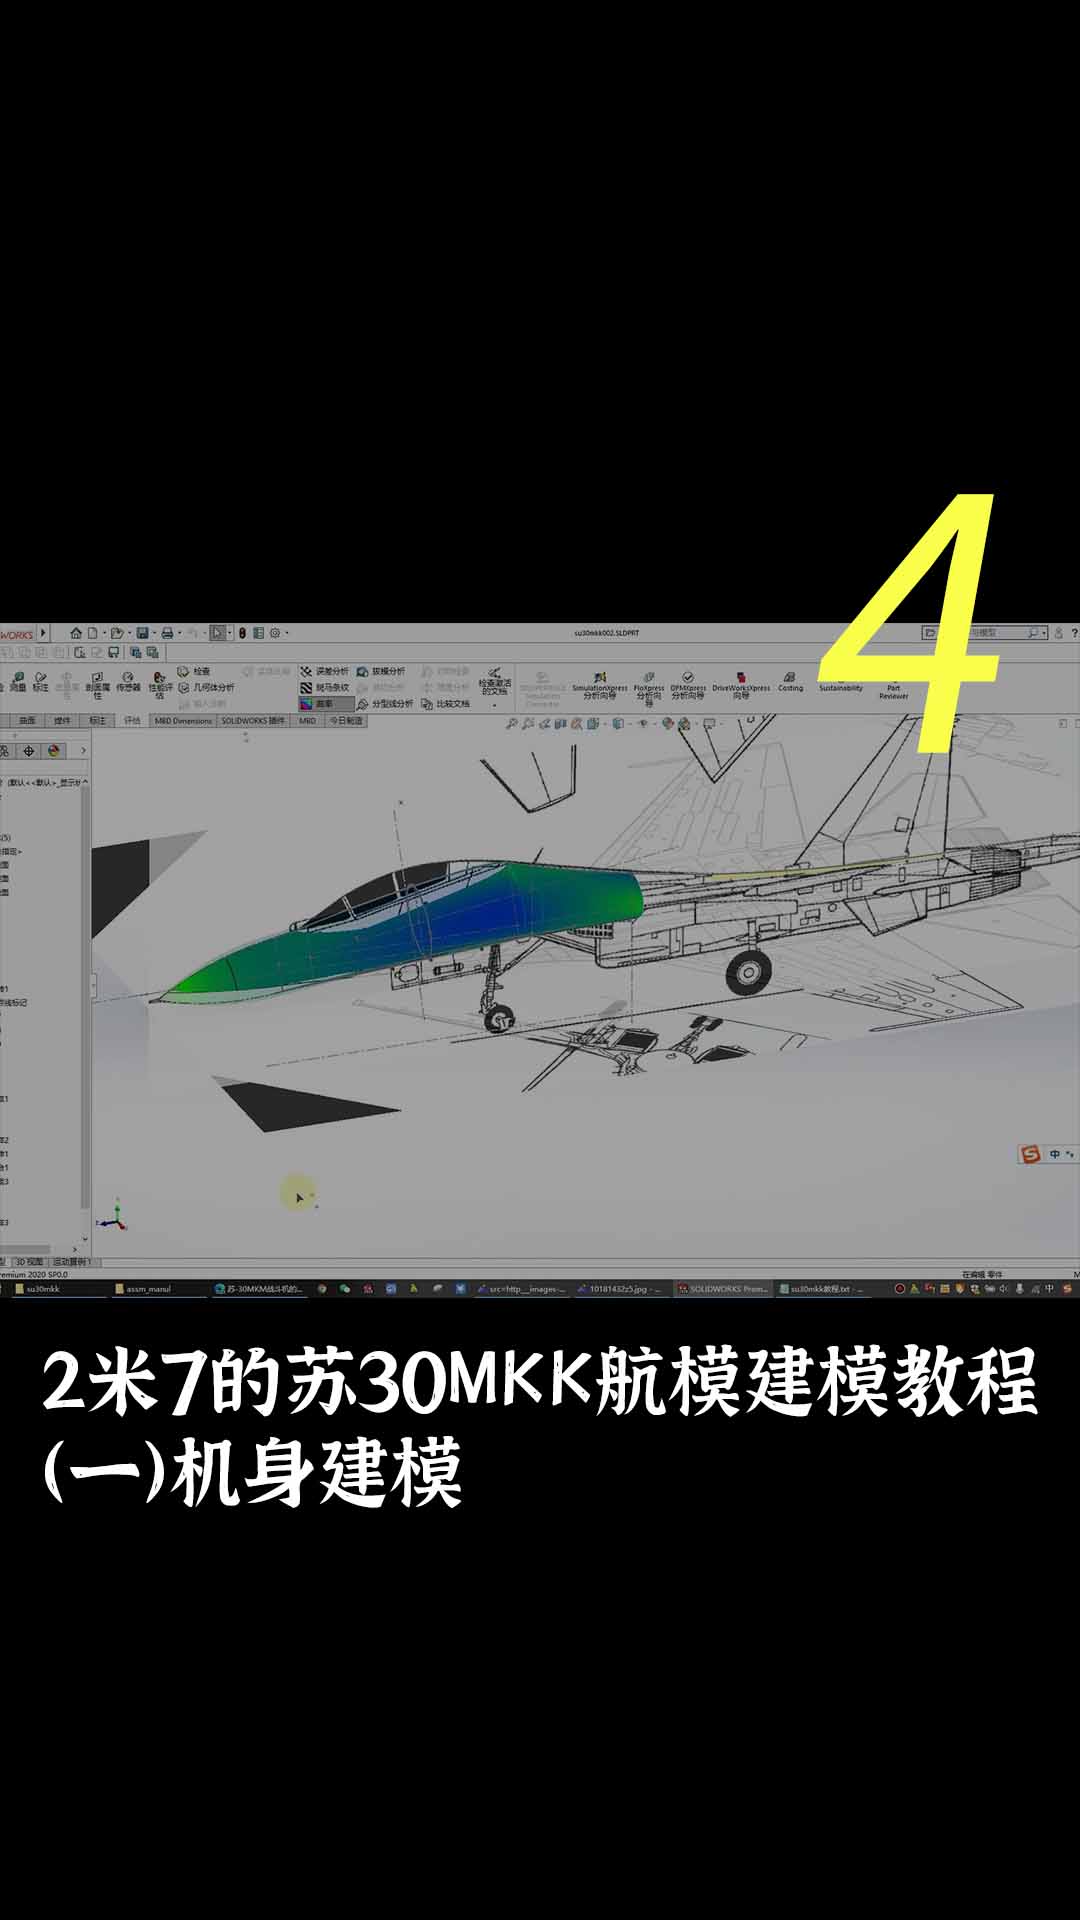 2米7的苏30MKK航模建模教程（一）机身建模4